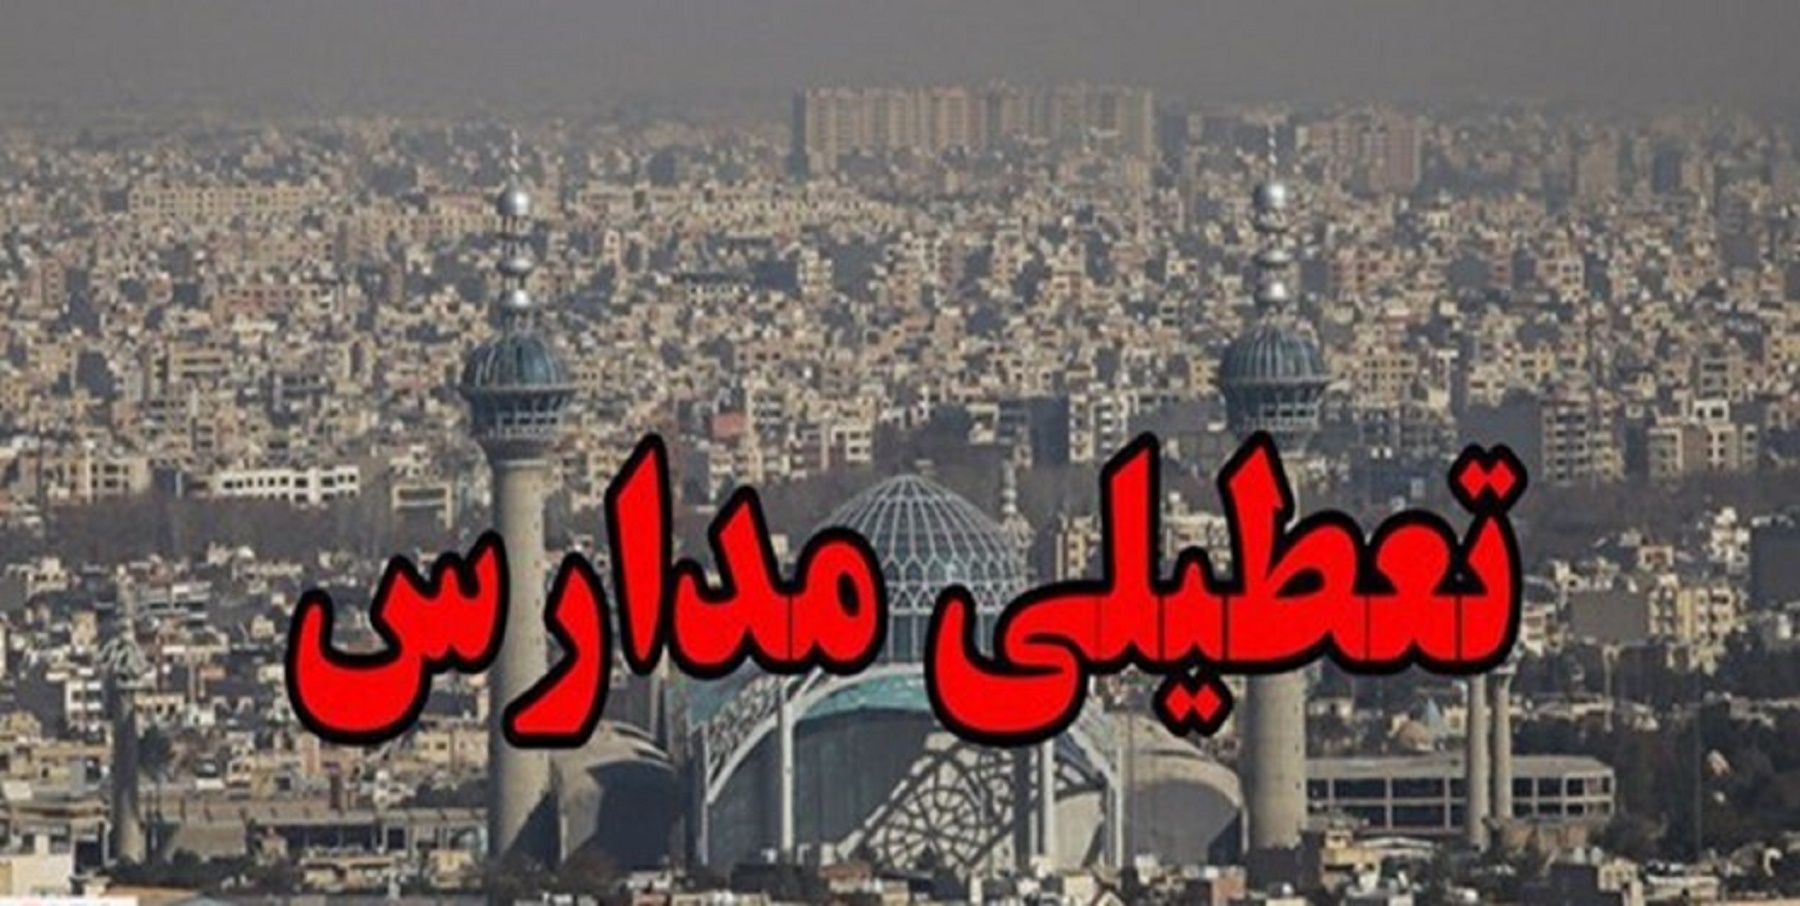 مدارس استان البرز باز هم روز دوشنبه تعطیل شد/ ممنوعیت تردد خودروهای دودزا